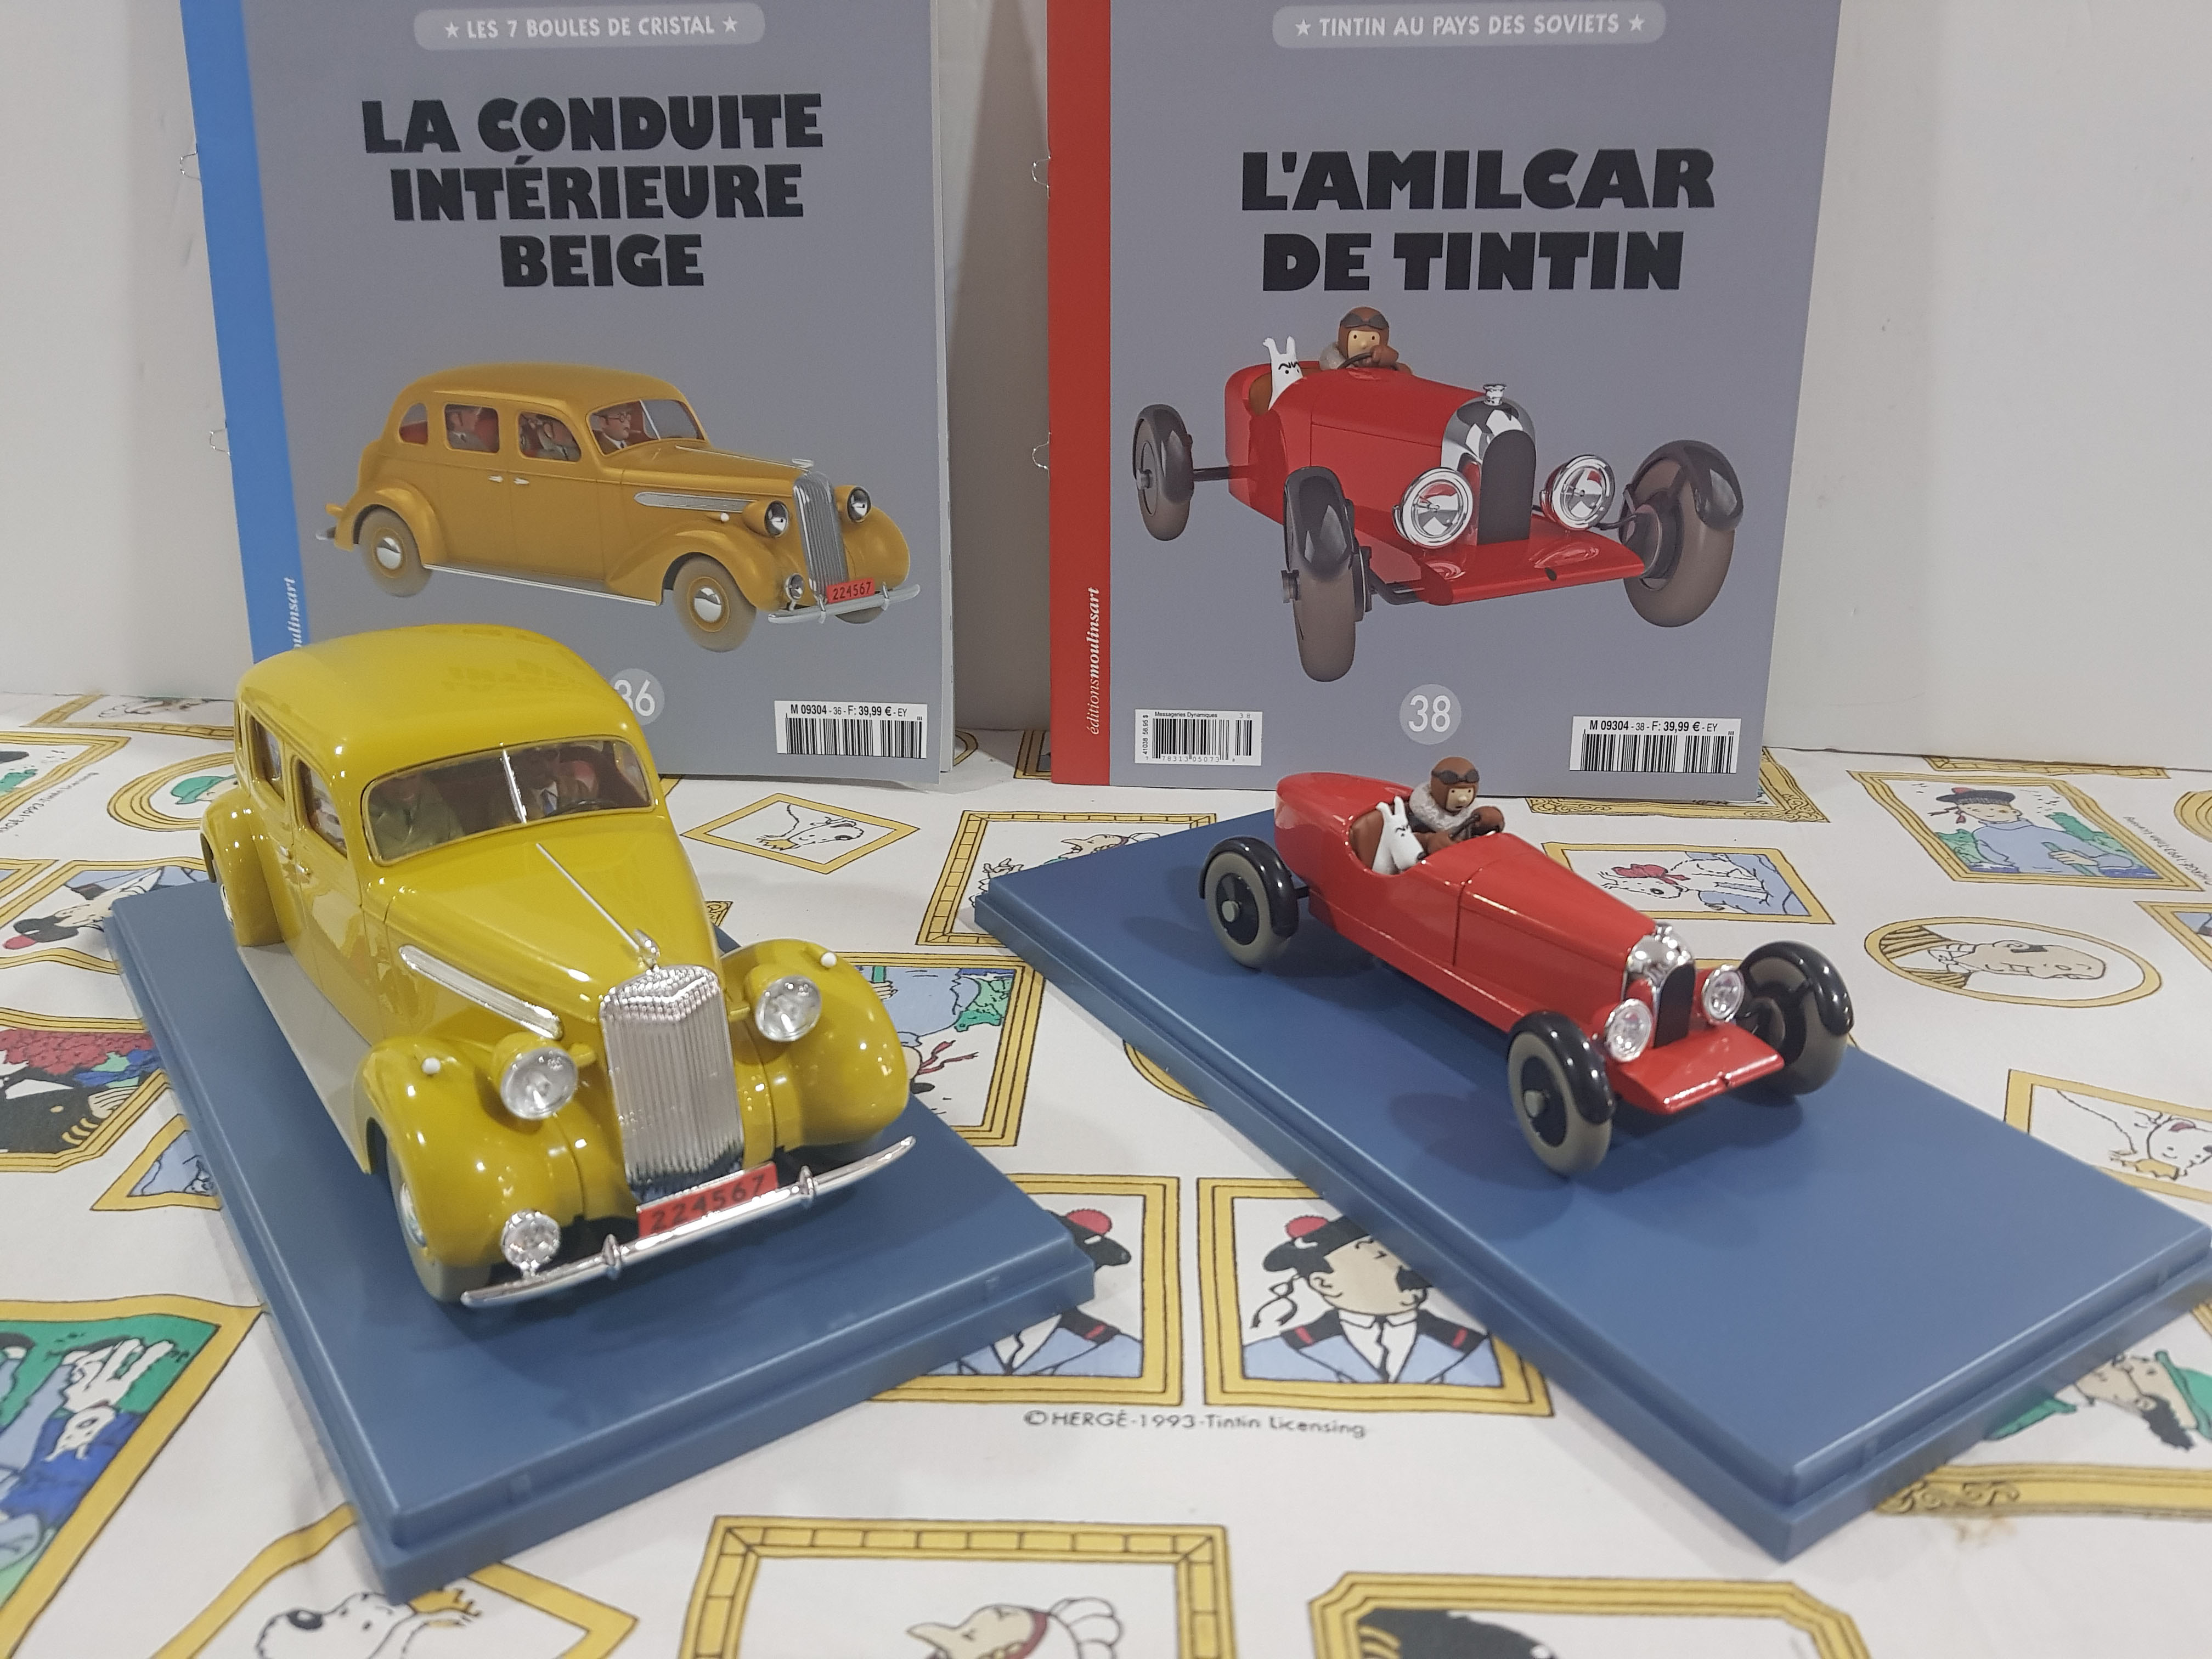 Cotxes nous 1/24 col.lecció francesa